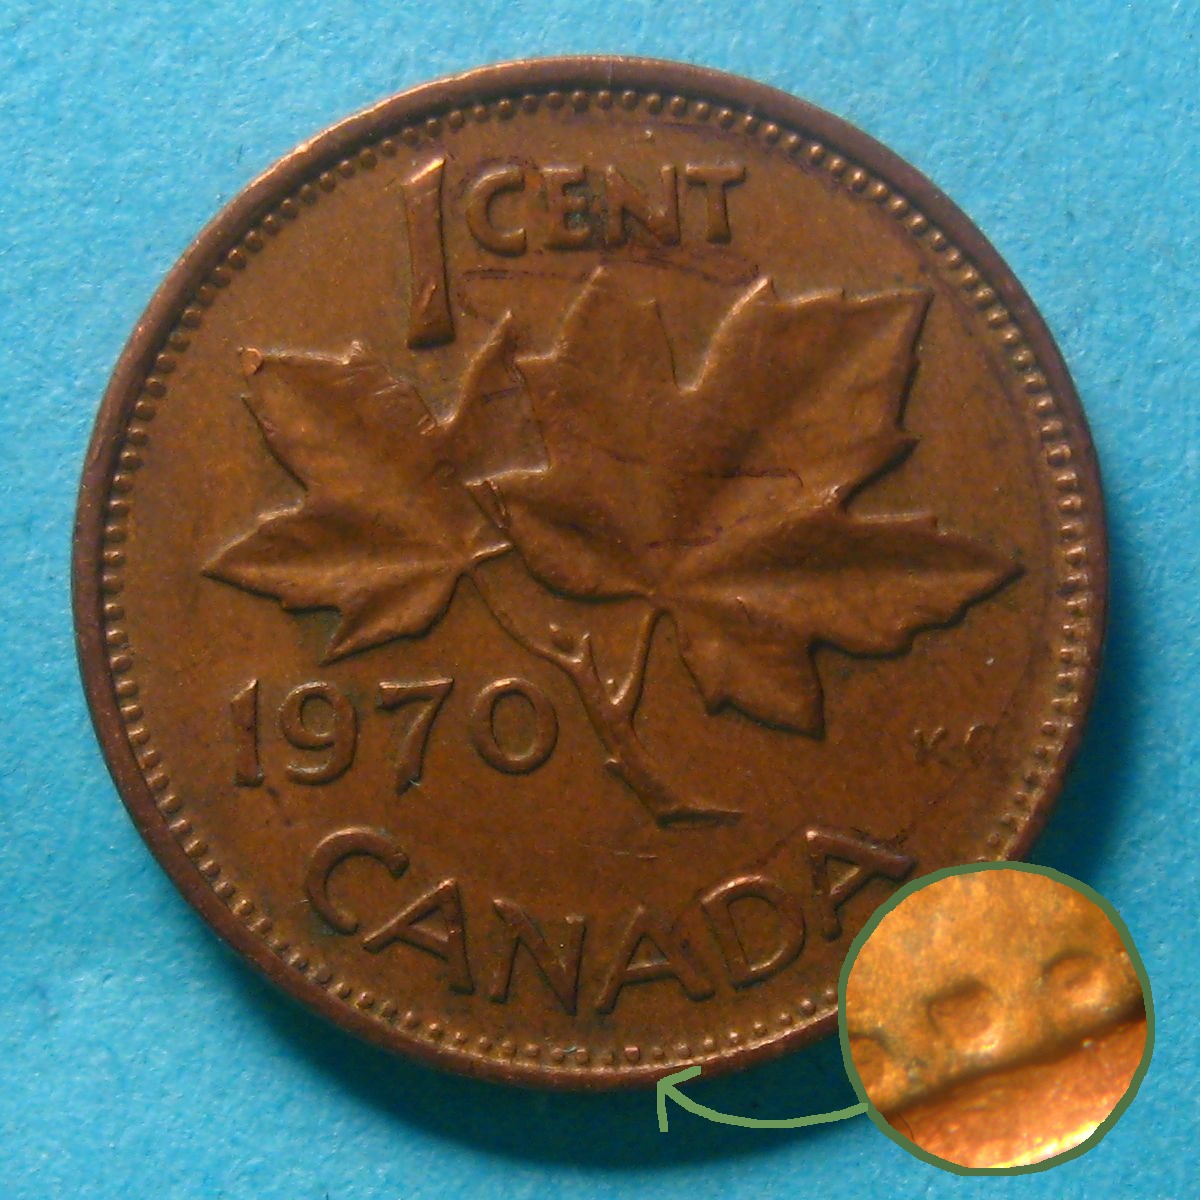 1 cent 1970 - Denticules détachées.jpg